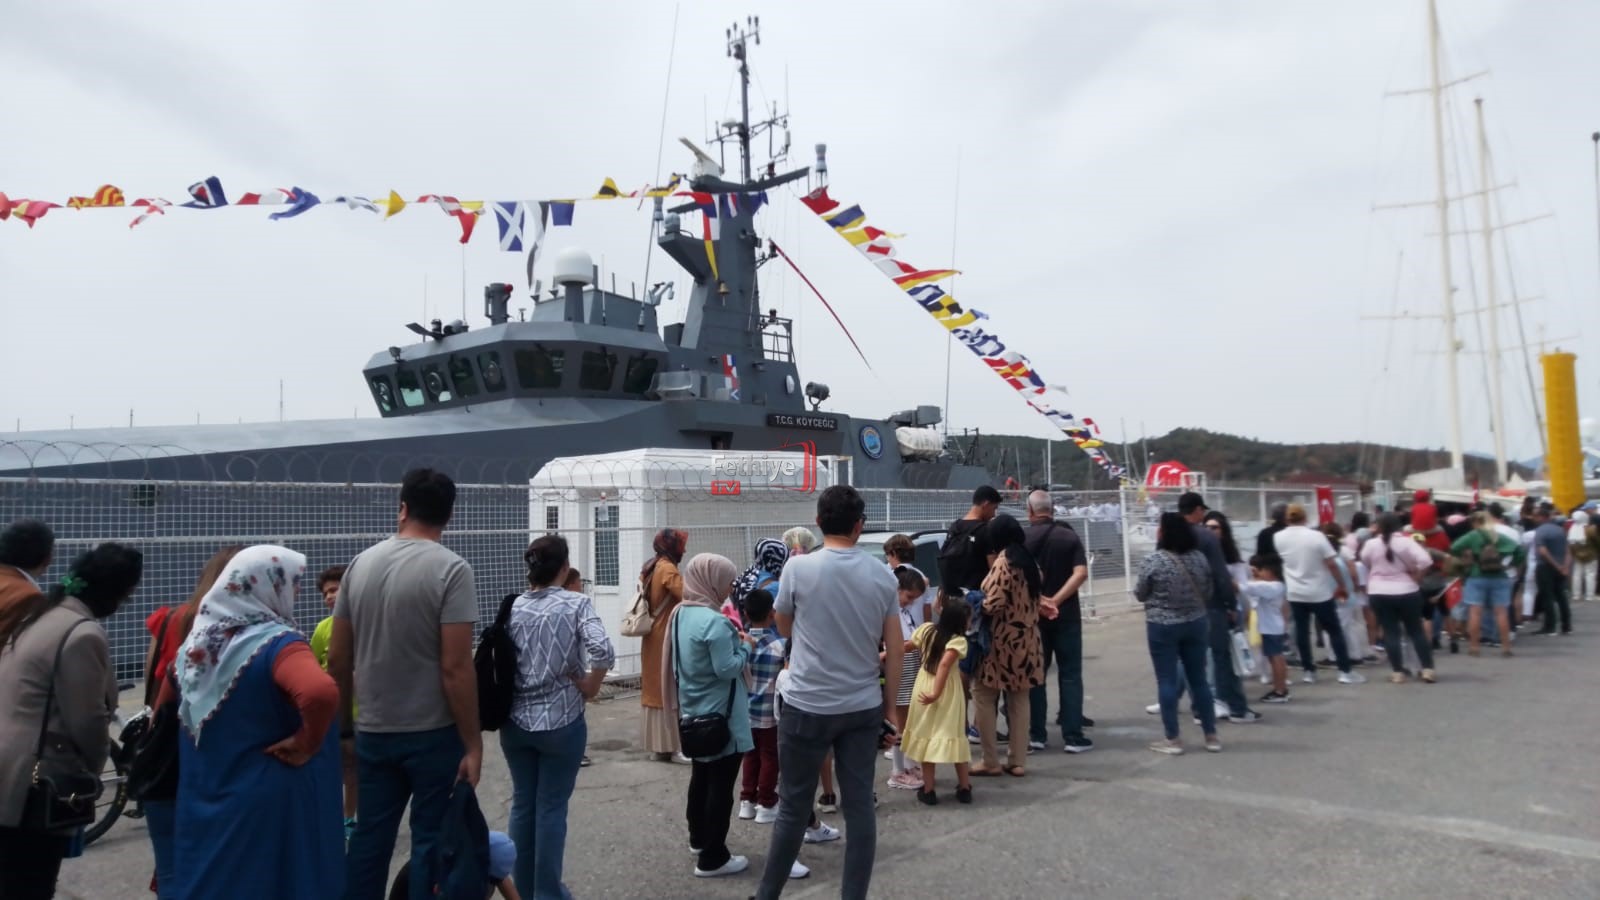 Halkın Ziyaretine Açılan, Askeri Gemiye Büyük İlgi Oldu (21)